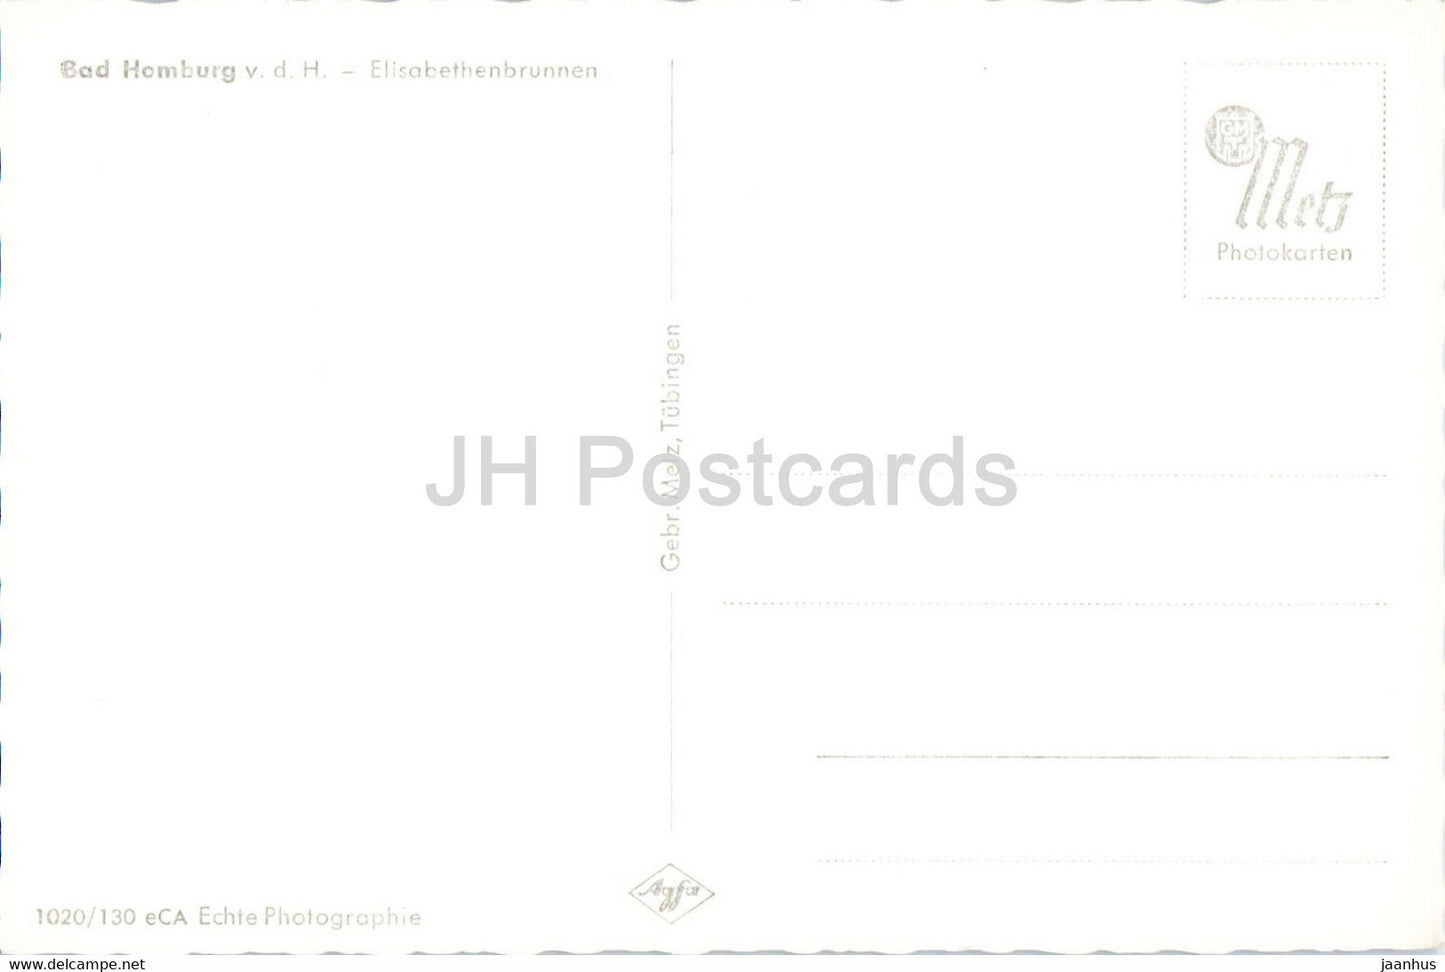 Bad Homburg - Elisabethenbrunnen - carte postale ancienne - Allemagne - inutilisée